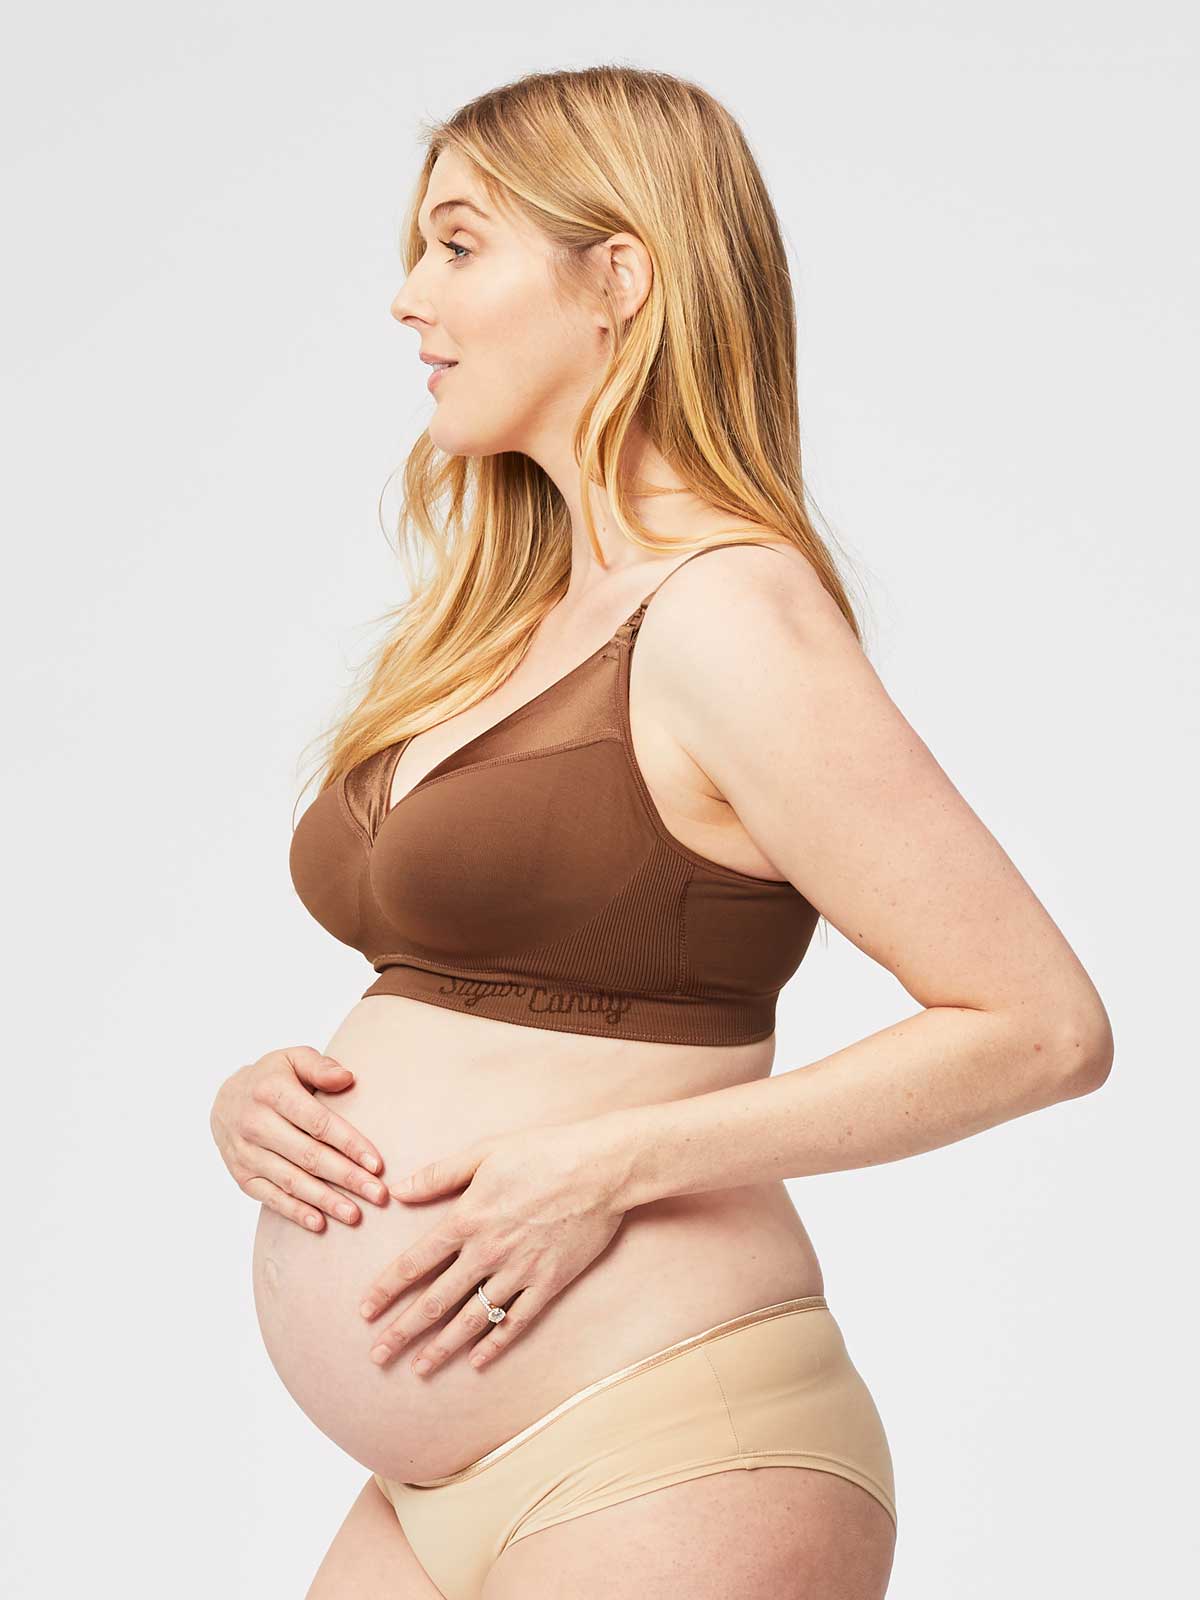 Buy Cake Maternity Charley M Flourish Nursing Bra Seamless  Maternity Bra  for Pregnancy Online at desertcartSeychelles